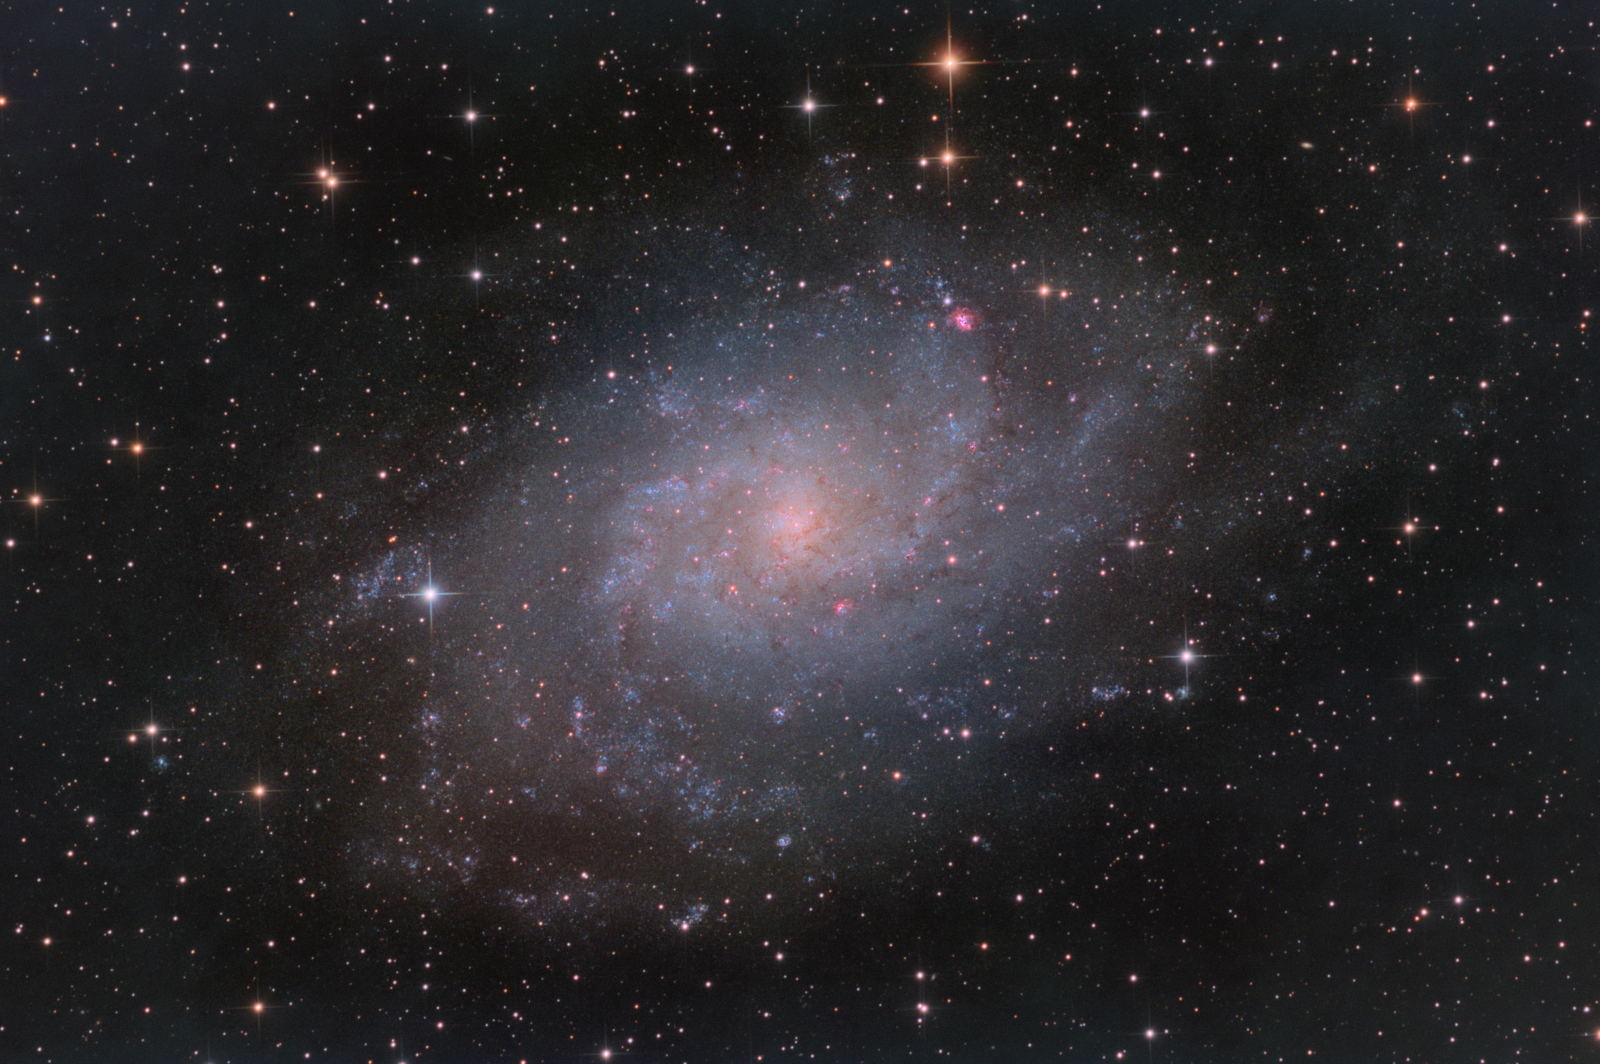 Triangulm Galaxy (M33)